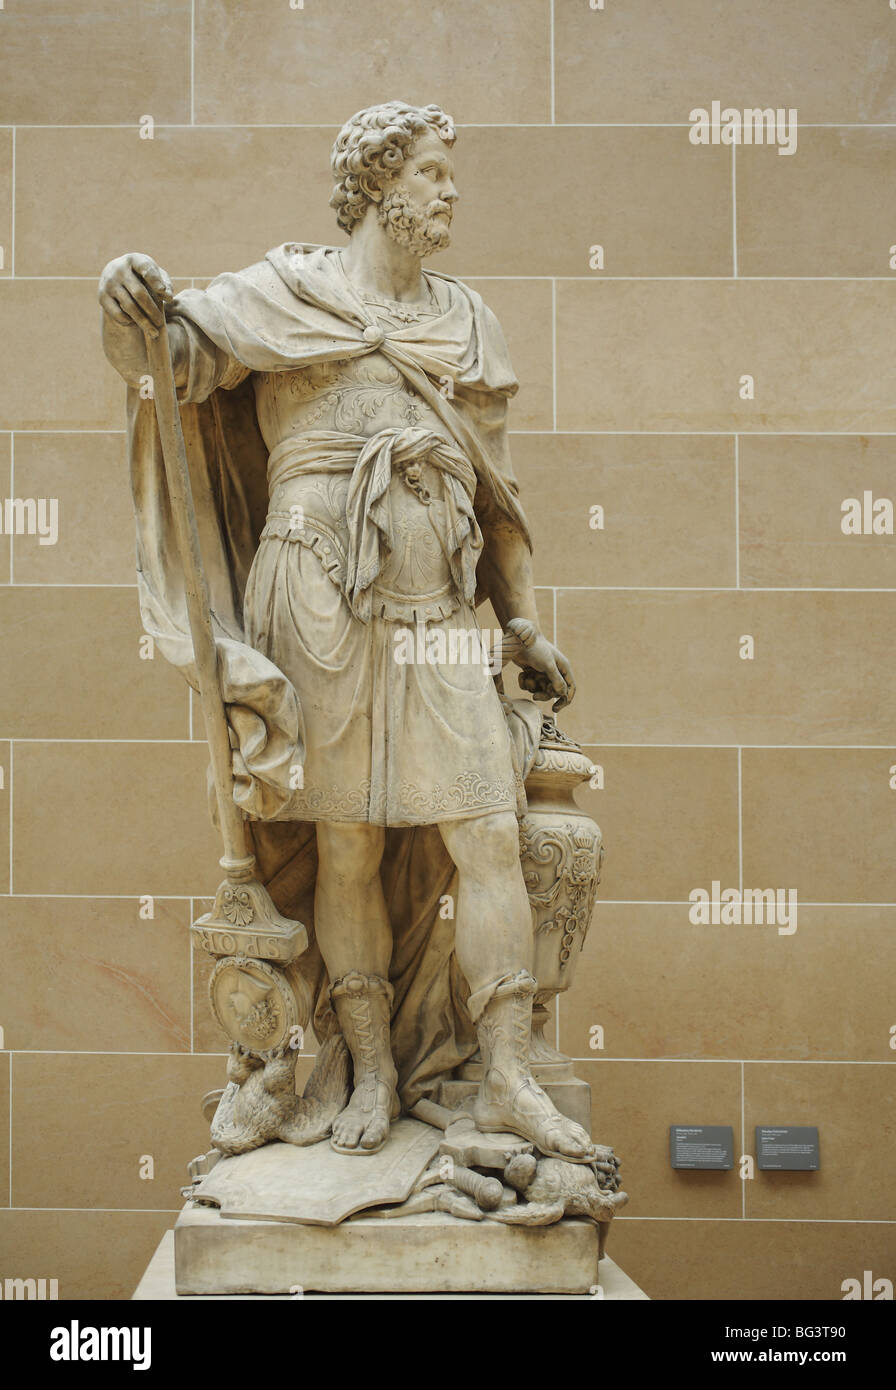 Hannibal by Sébastien Slodtz The Louvre Museum, Paris, France Stock Photo